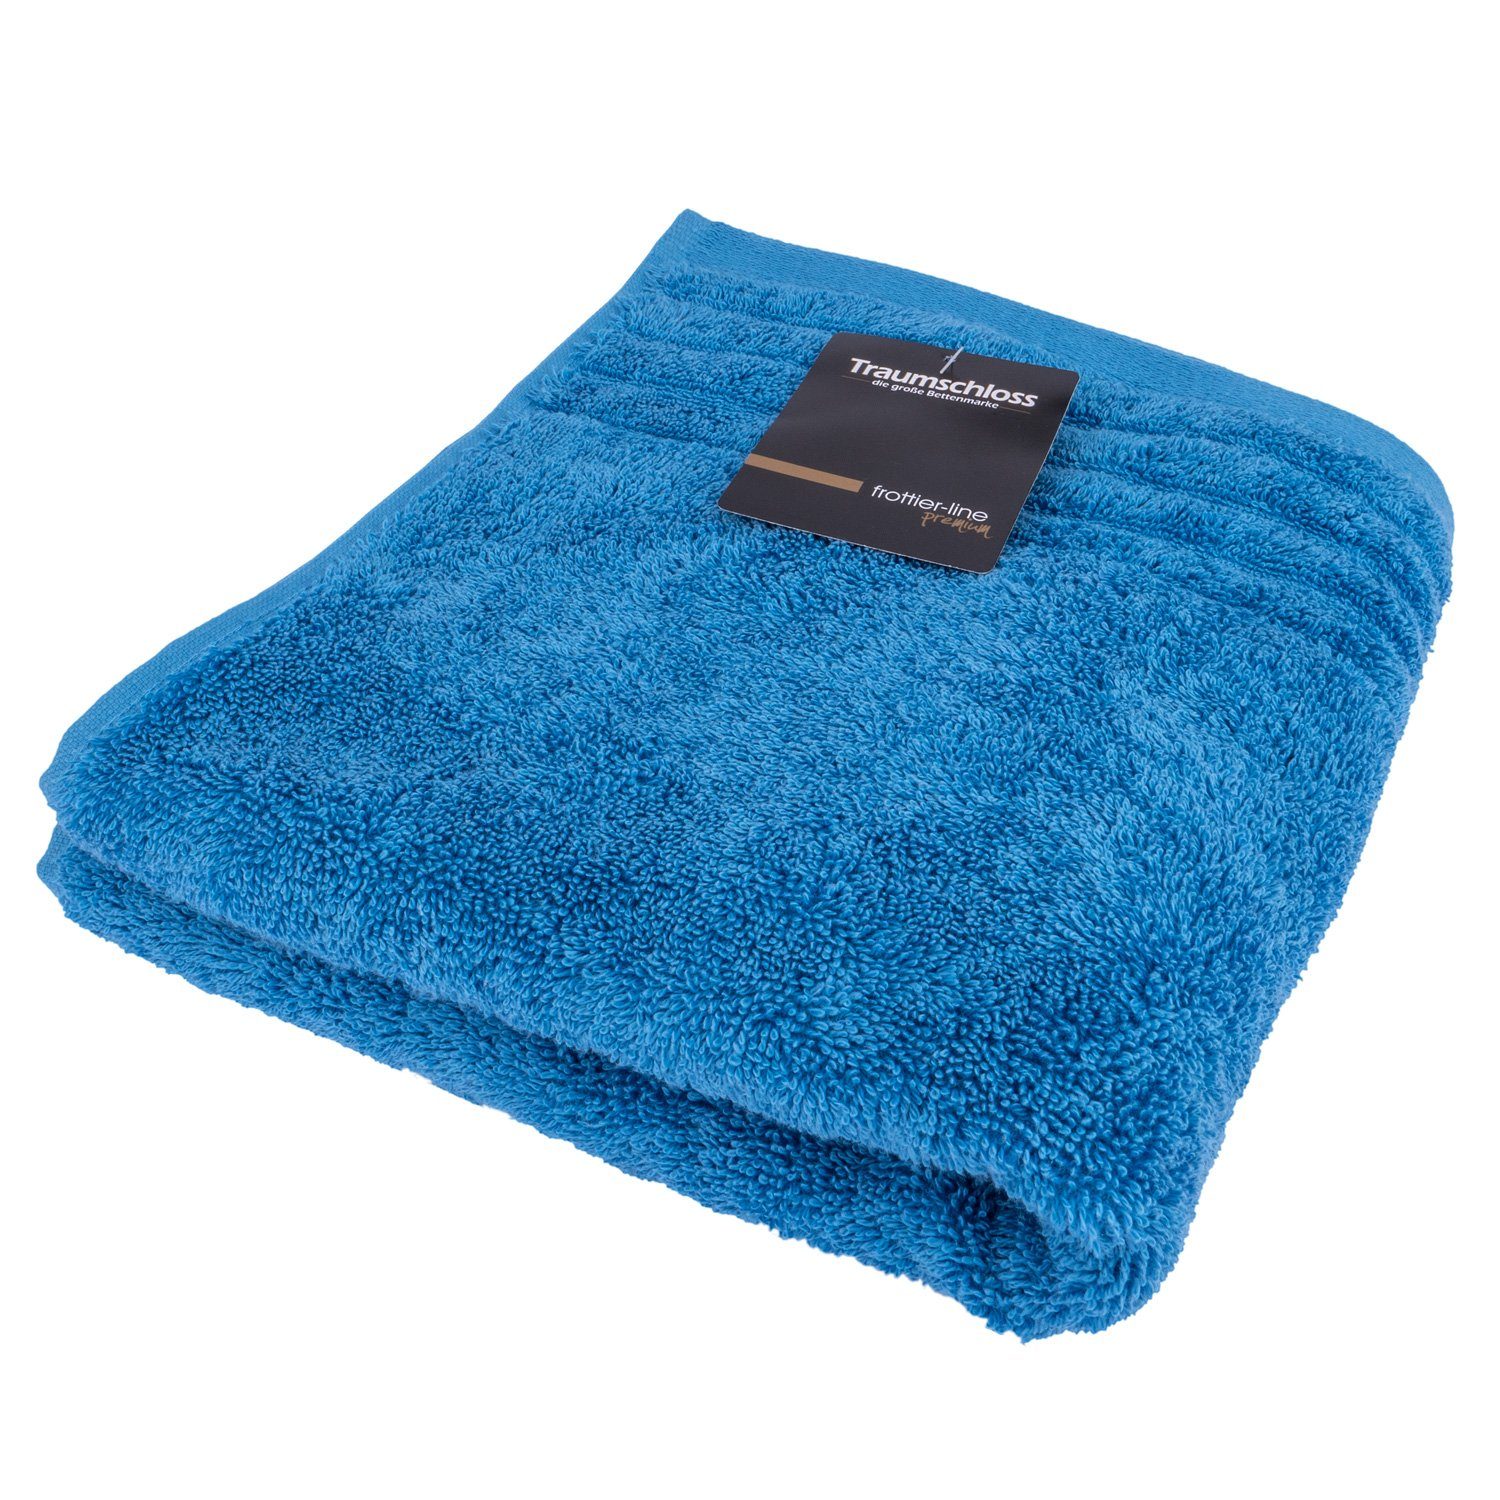 Traumschloss Handtuch Premium-Line, Frottier Baumwolle mit 600g/m² blau (1-St), amerikanische 100% Supima nordic